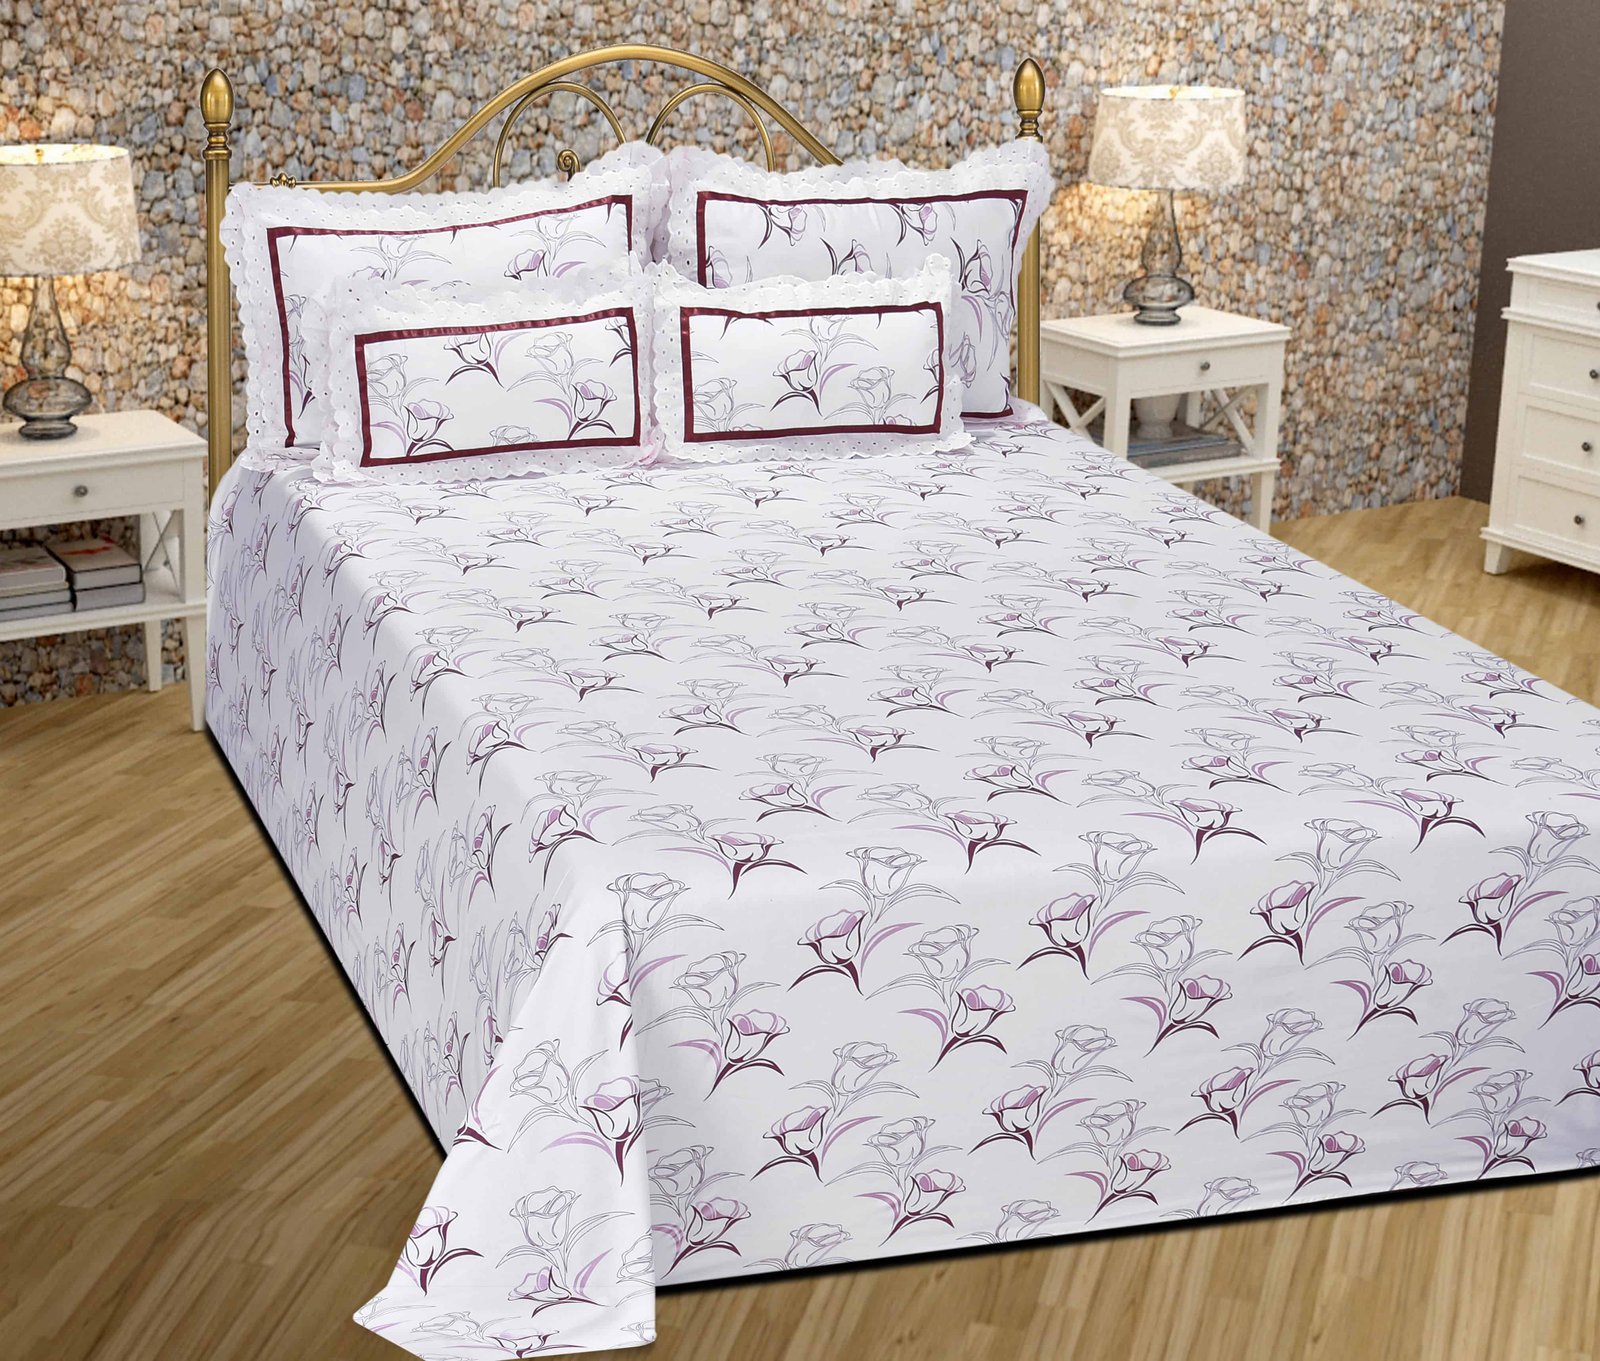 Bedding Set Buy High Quality Designer Bedding Set At Affordable